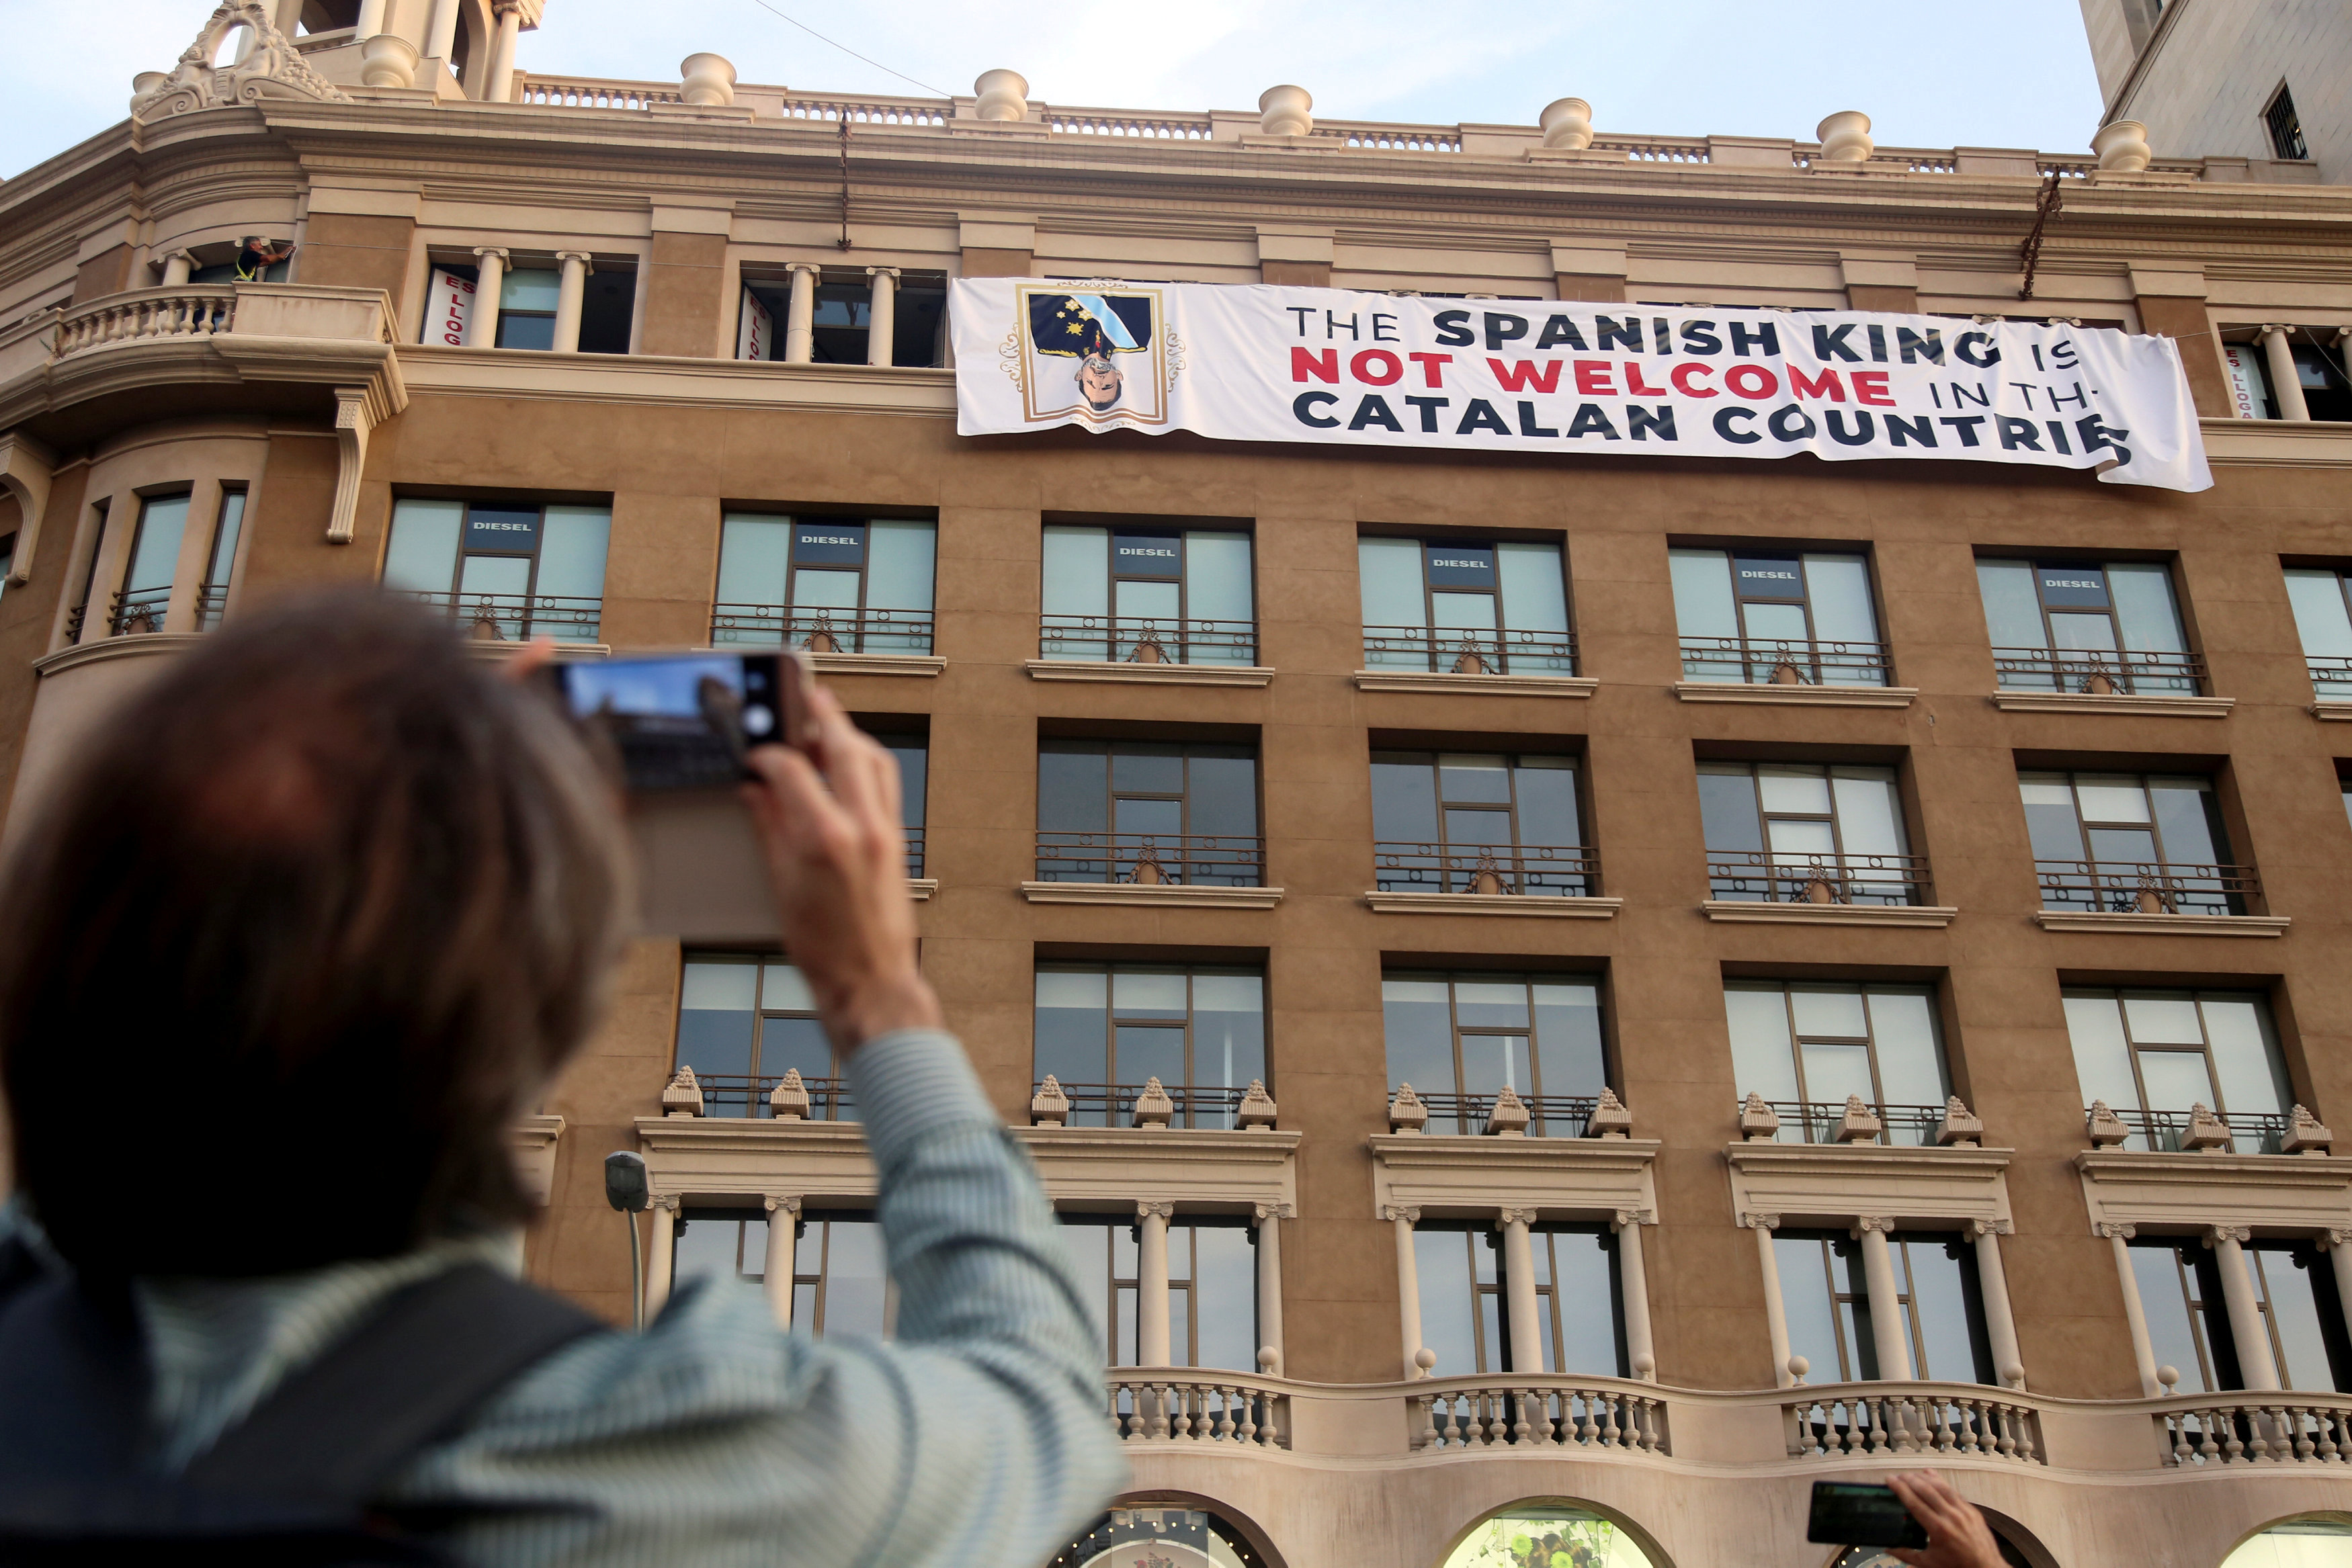 Despliegan pancarta contra el rey en Barcelona antes de homenaje a víctimas de atentados